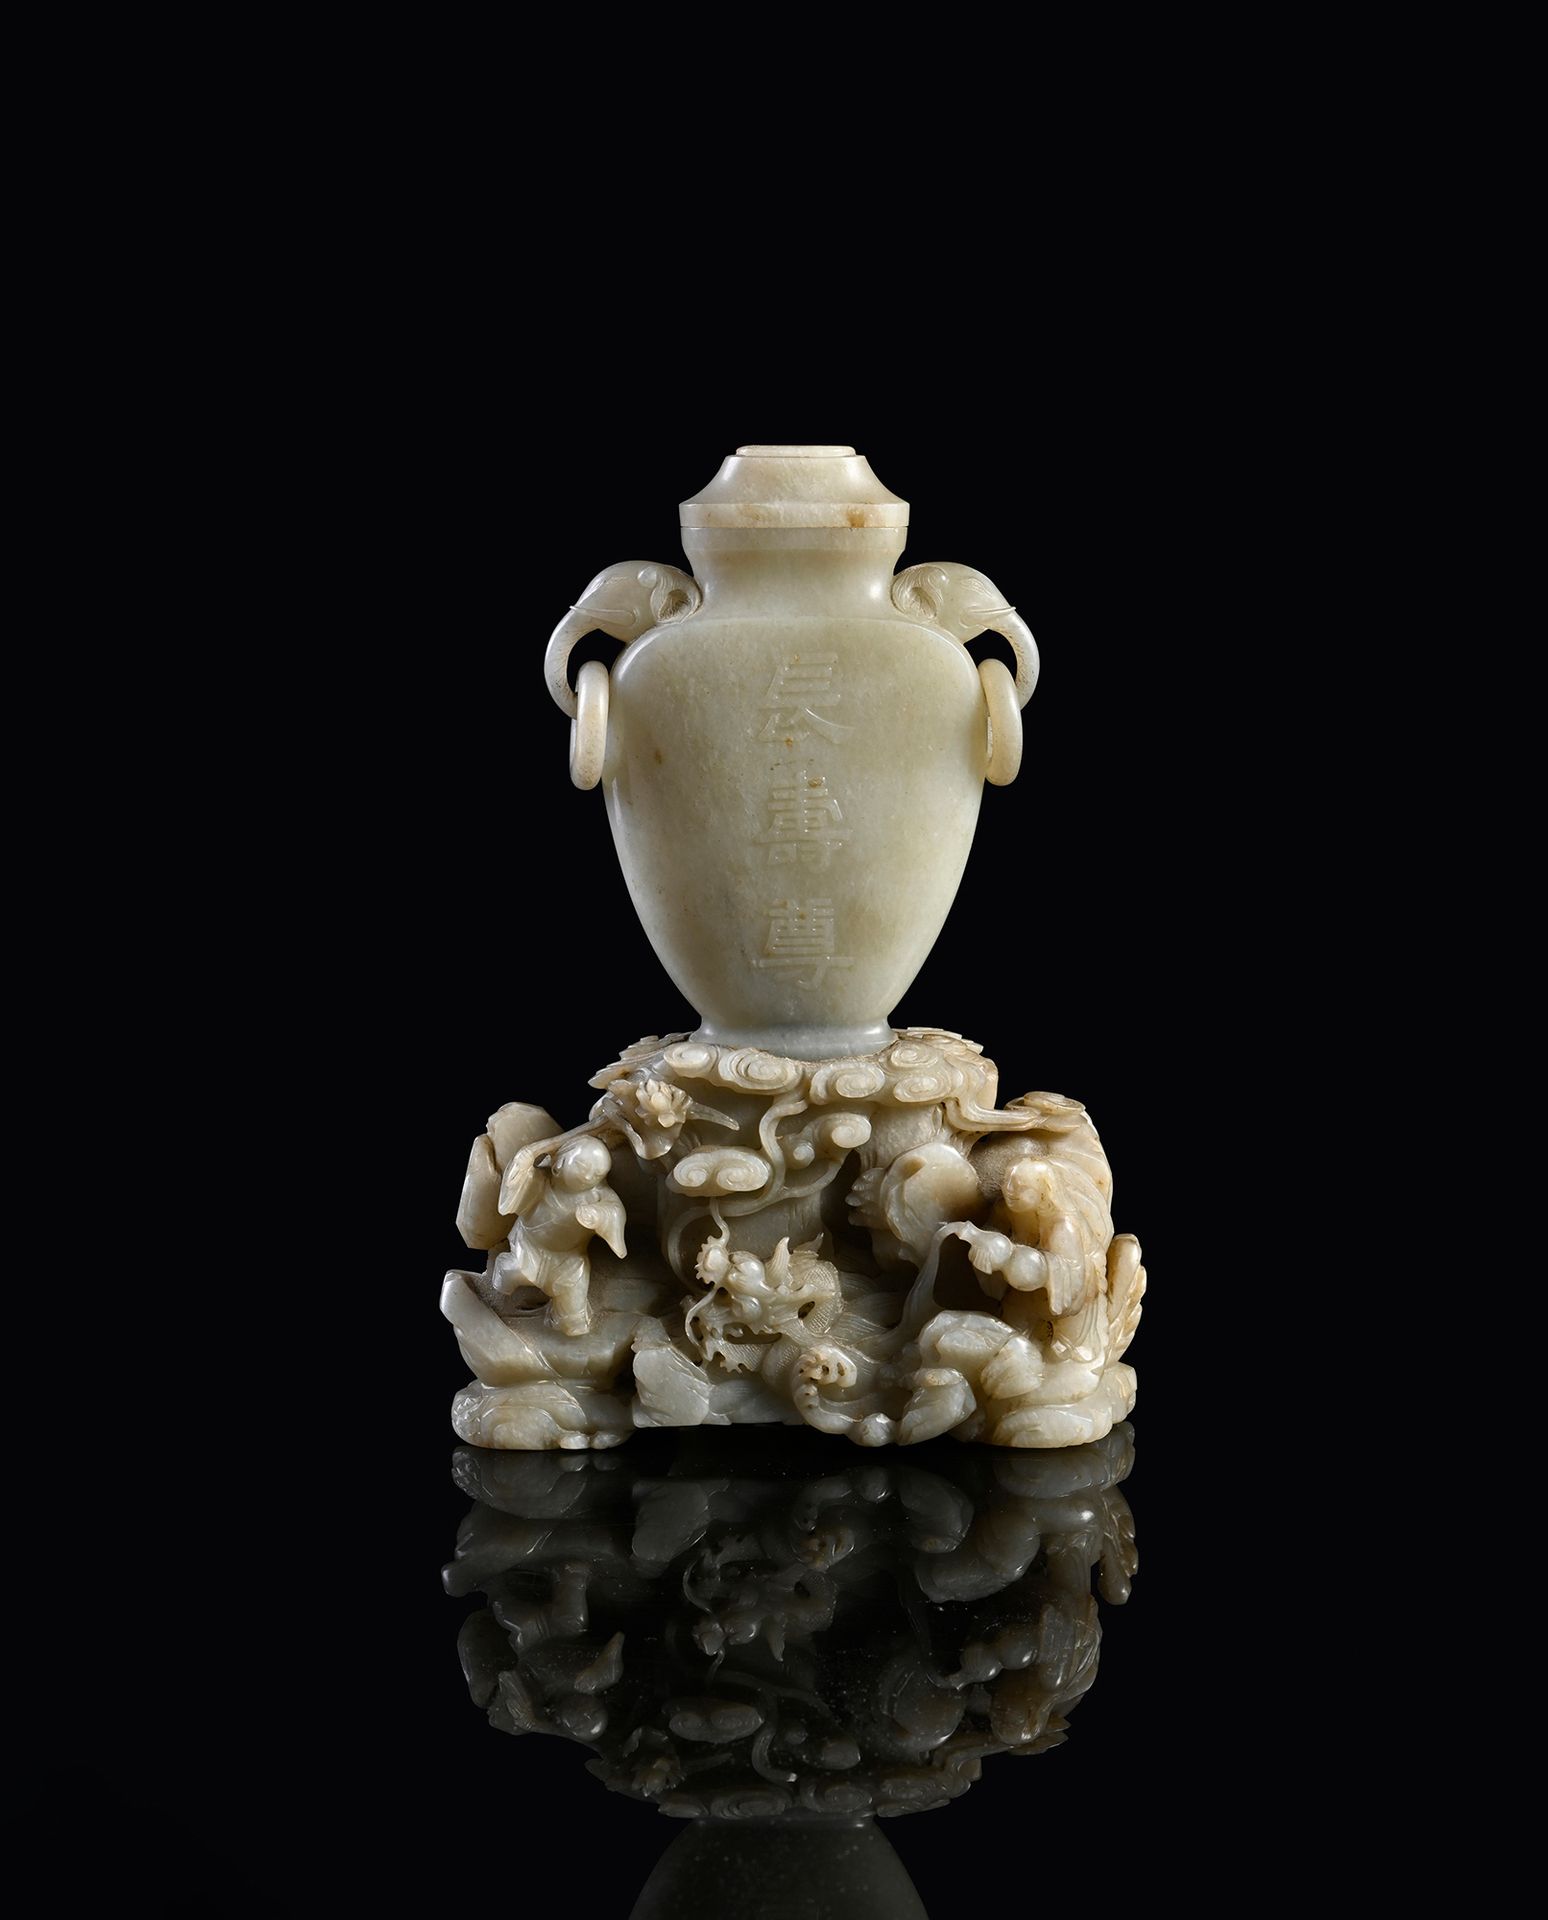 CHINE, XVIIIe siècle 难得一见的重要灰玉包浆花瓶
花瓶的形状是扁形的，放在小脚上，两边都有轻微的浮雕 "cháng shòu zūn "的吉&hellip;